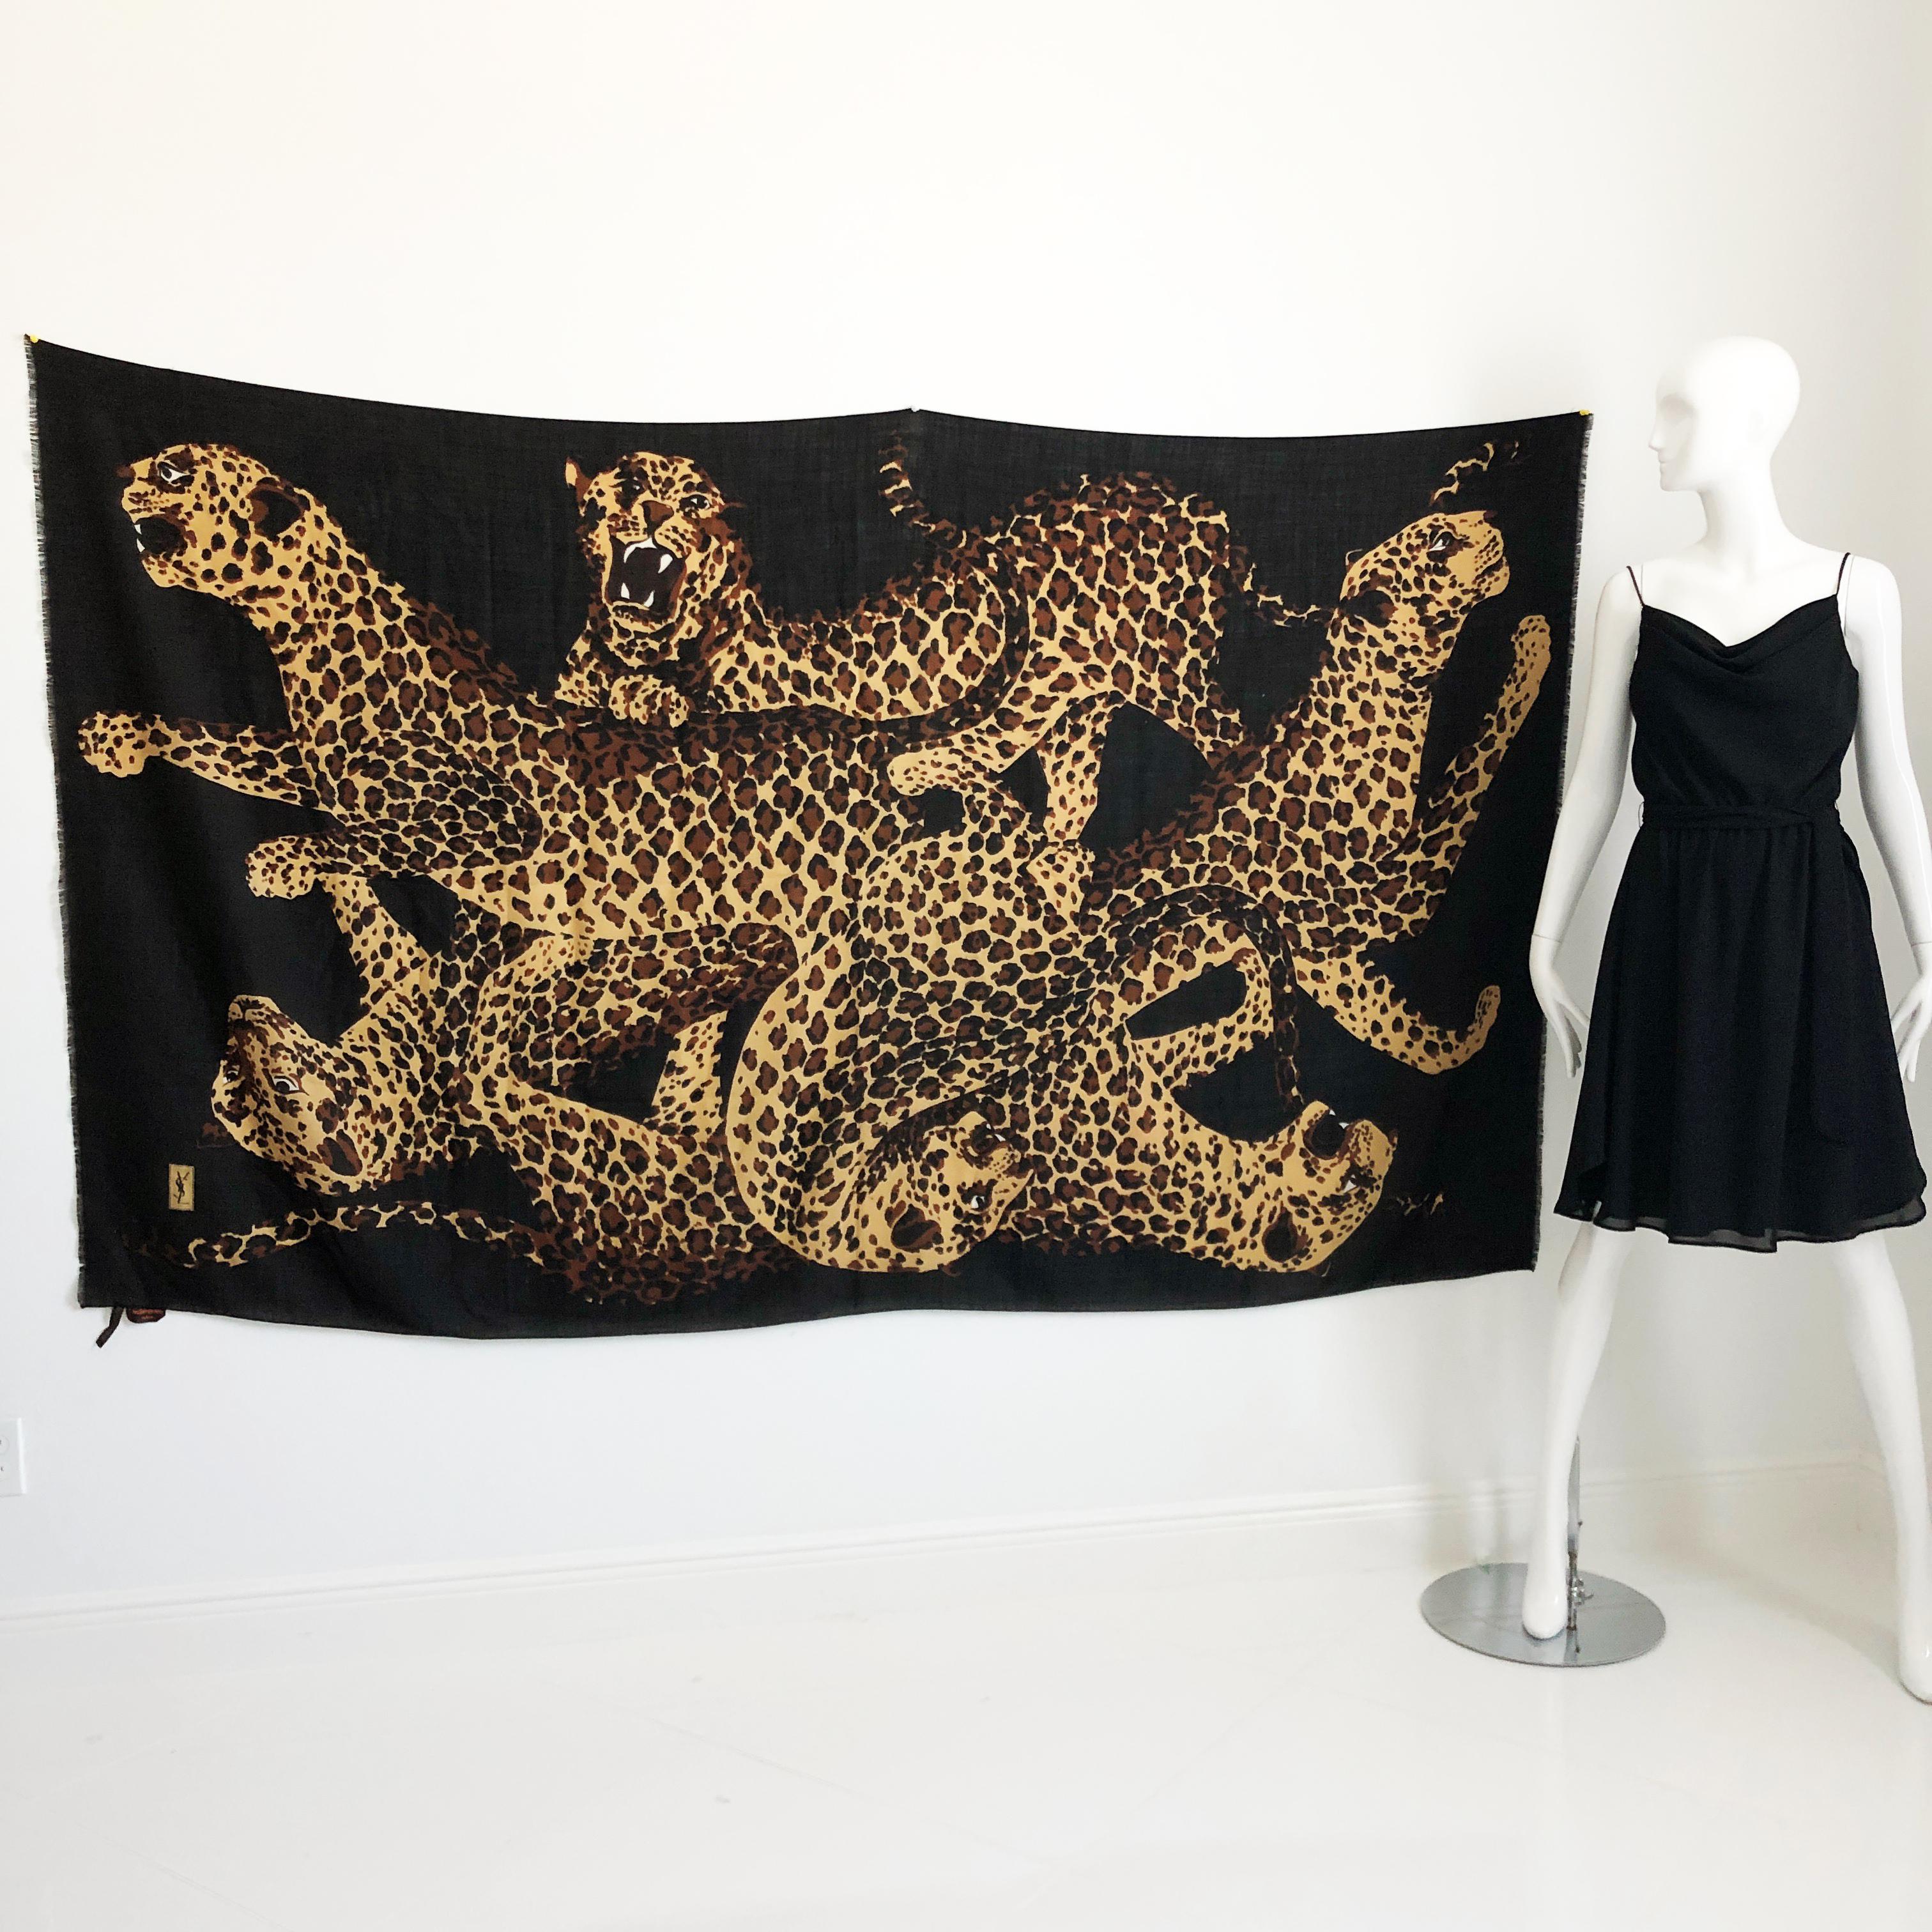 Authentisch, aus Vorbesitz und unglaublich selten Yves Saint Laurent Massive 84in L x 78in H Leoparden Schal oder Schal, wahrscheinlich in den 90er Jahren gemacht.  

Es ist aus einer schwarzen Woll-Seiden-Mischung gefertigt und zeigt die ikonischen